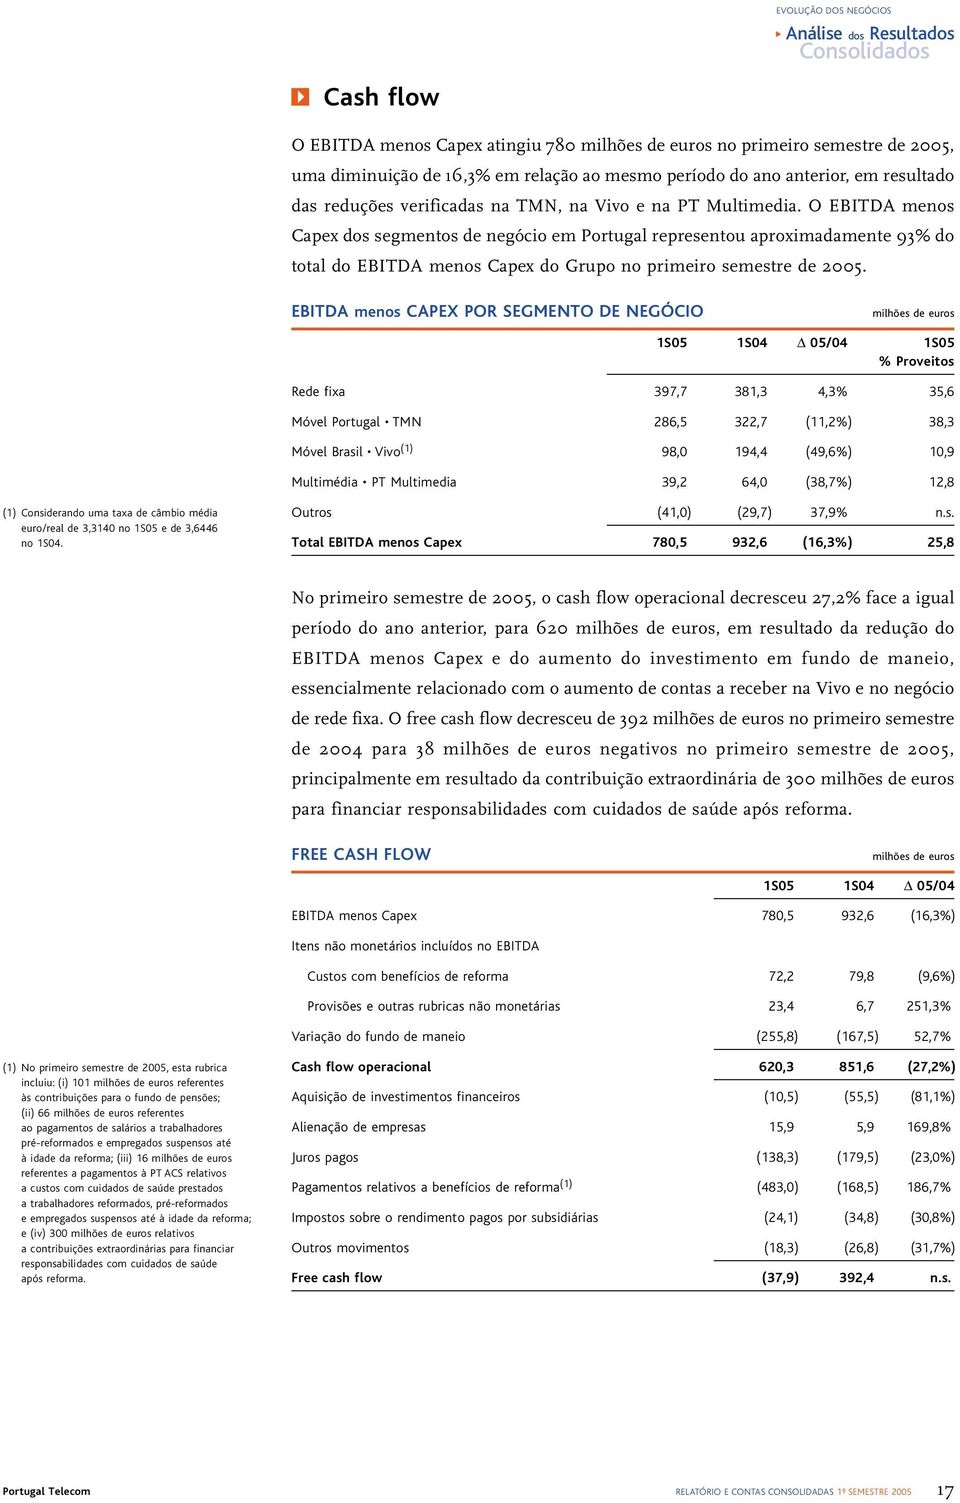 O EBITDA menos Capex dos segmentos de negócio em Portugal representou aproximadamente 93% do total do EBITDA menos Capex do Grupo no primeiro semestre de 2005.